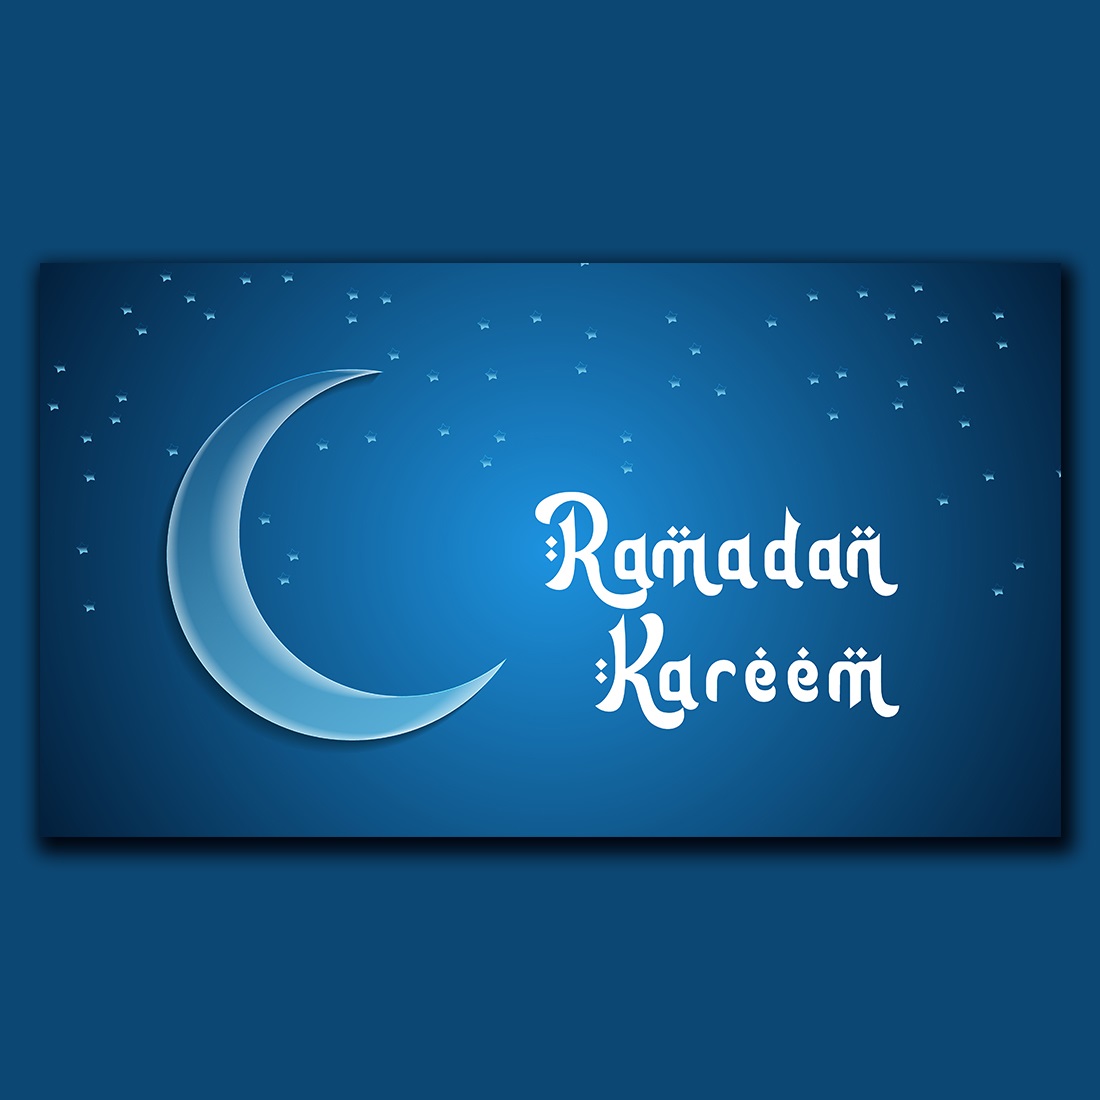 Ramadan Kareem greetings banner design preview image.